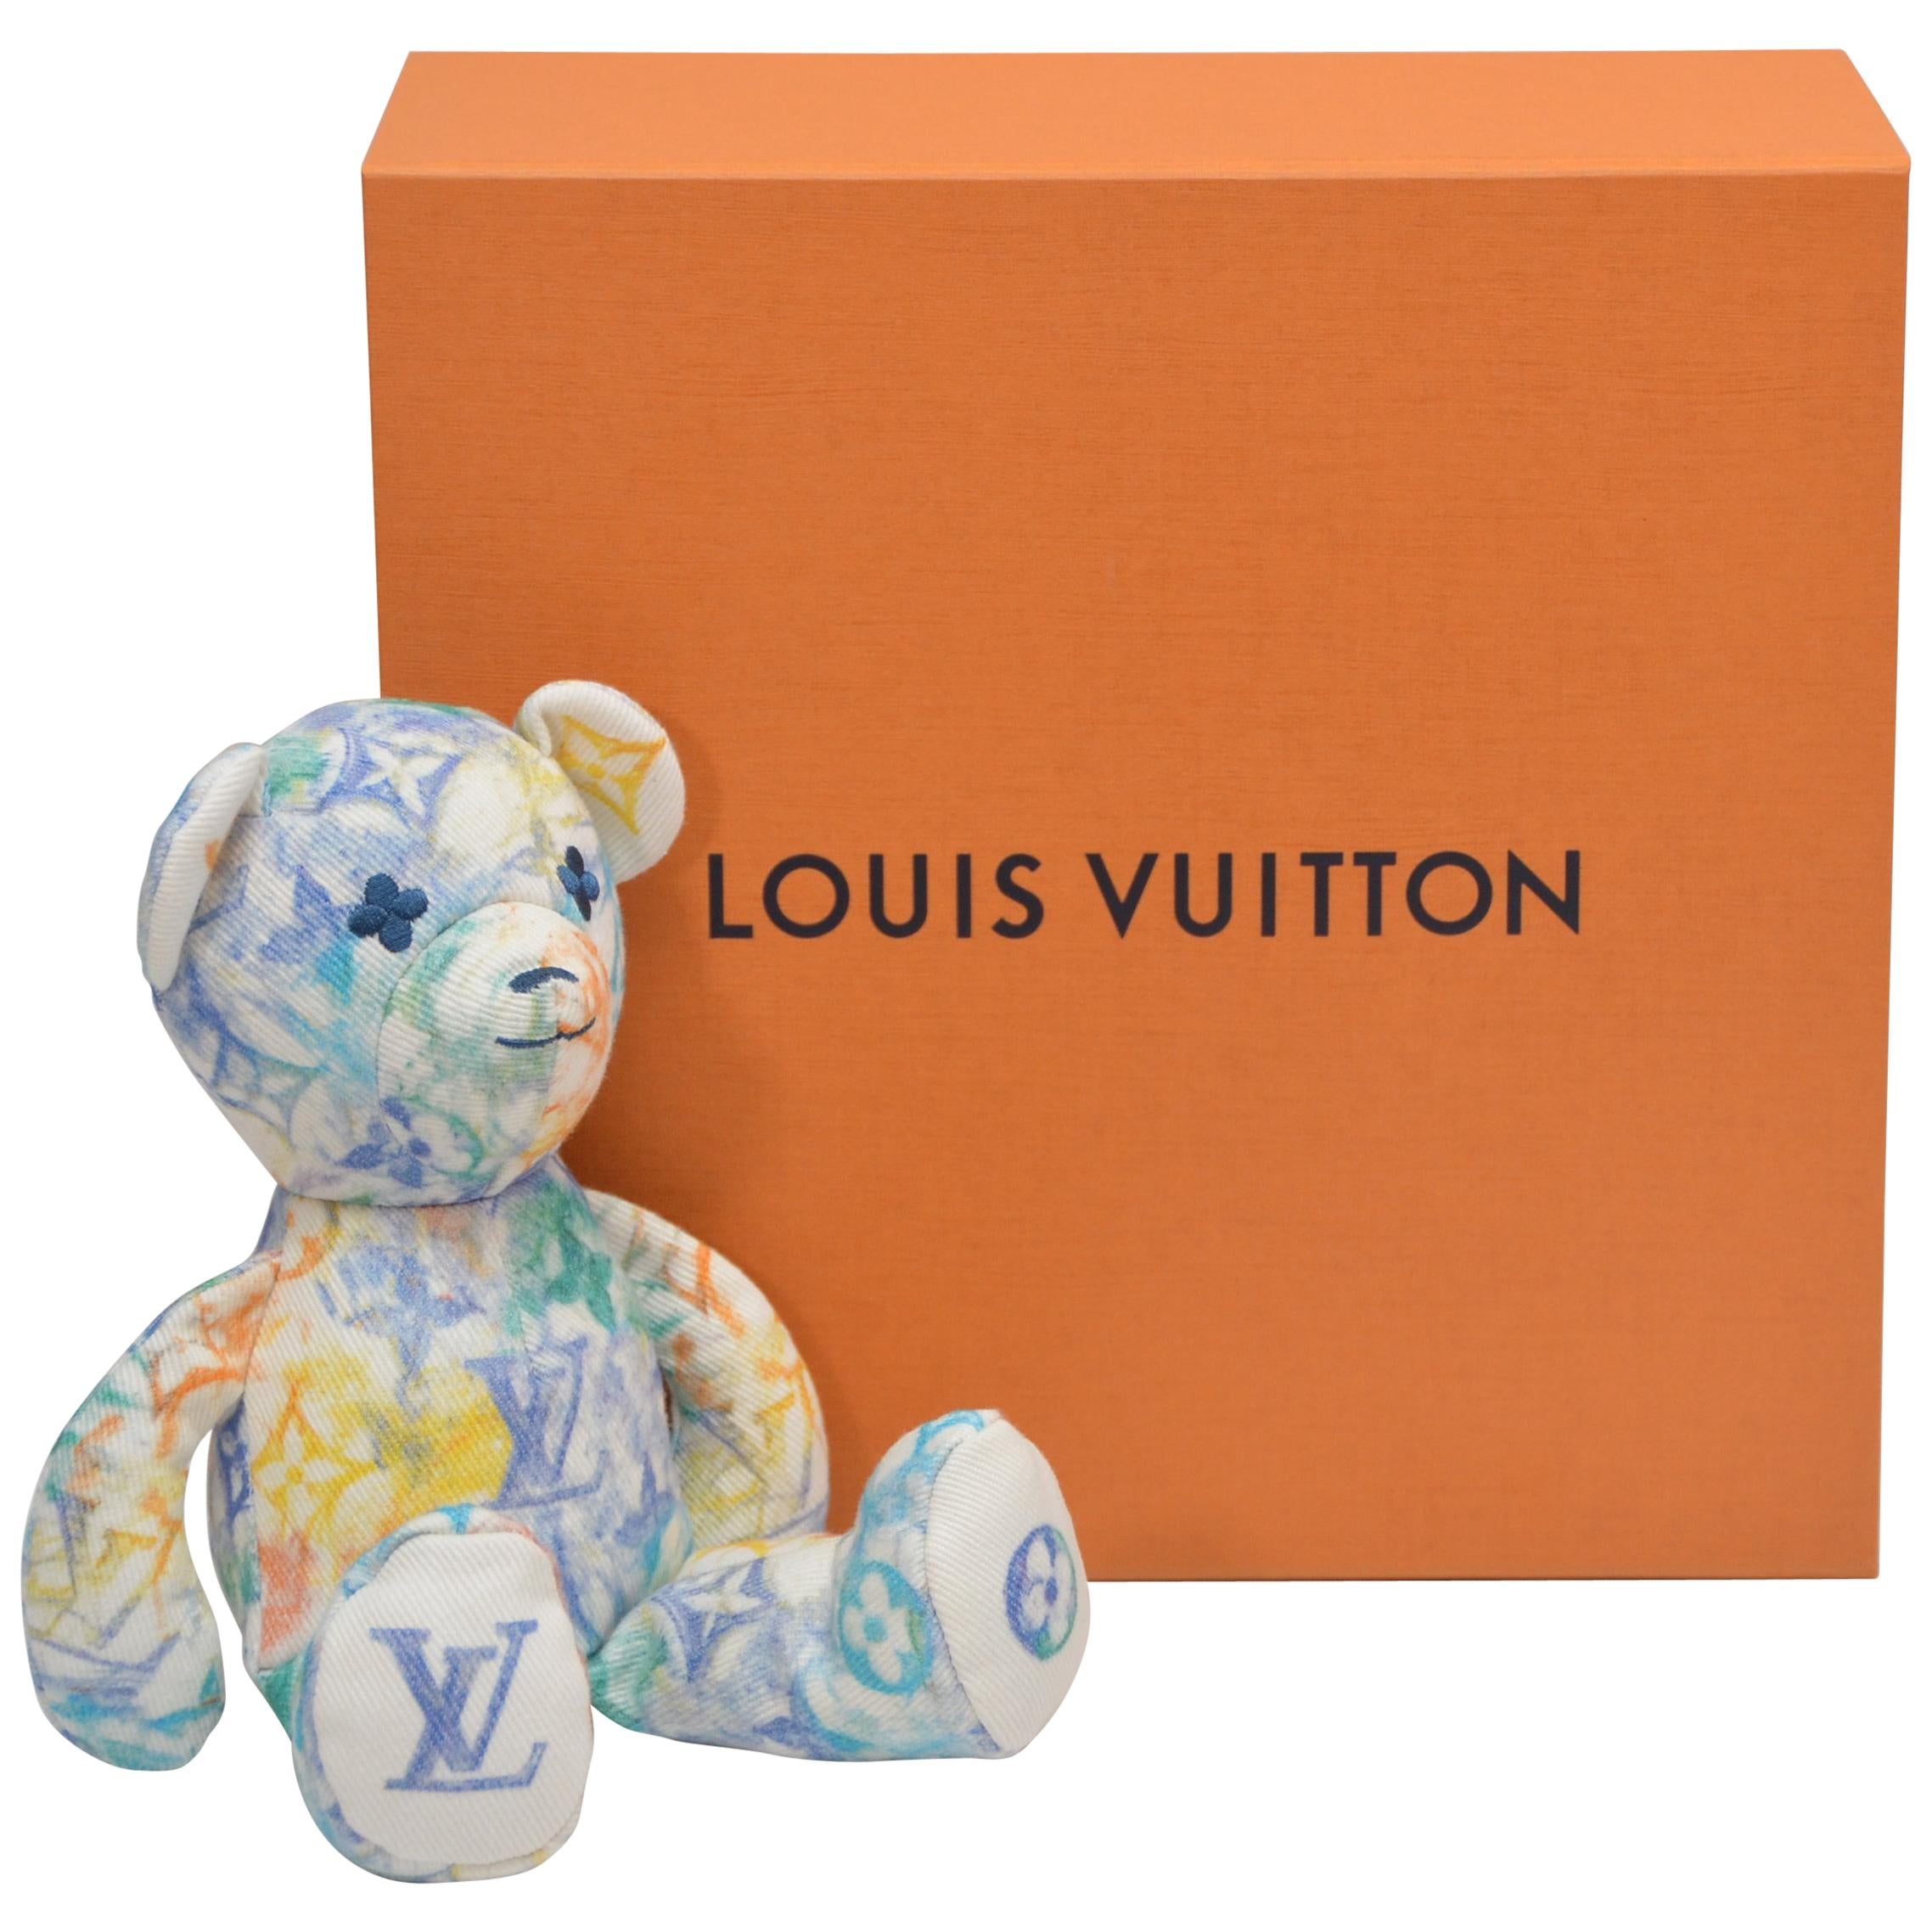 Supreme x Louis Vuitton Bespoke Pudsey Bear Sale